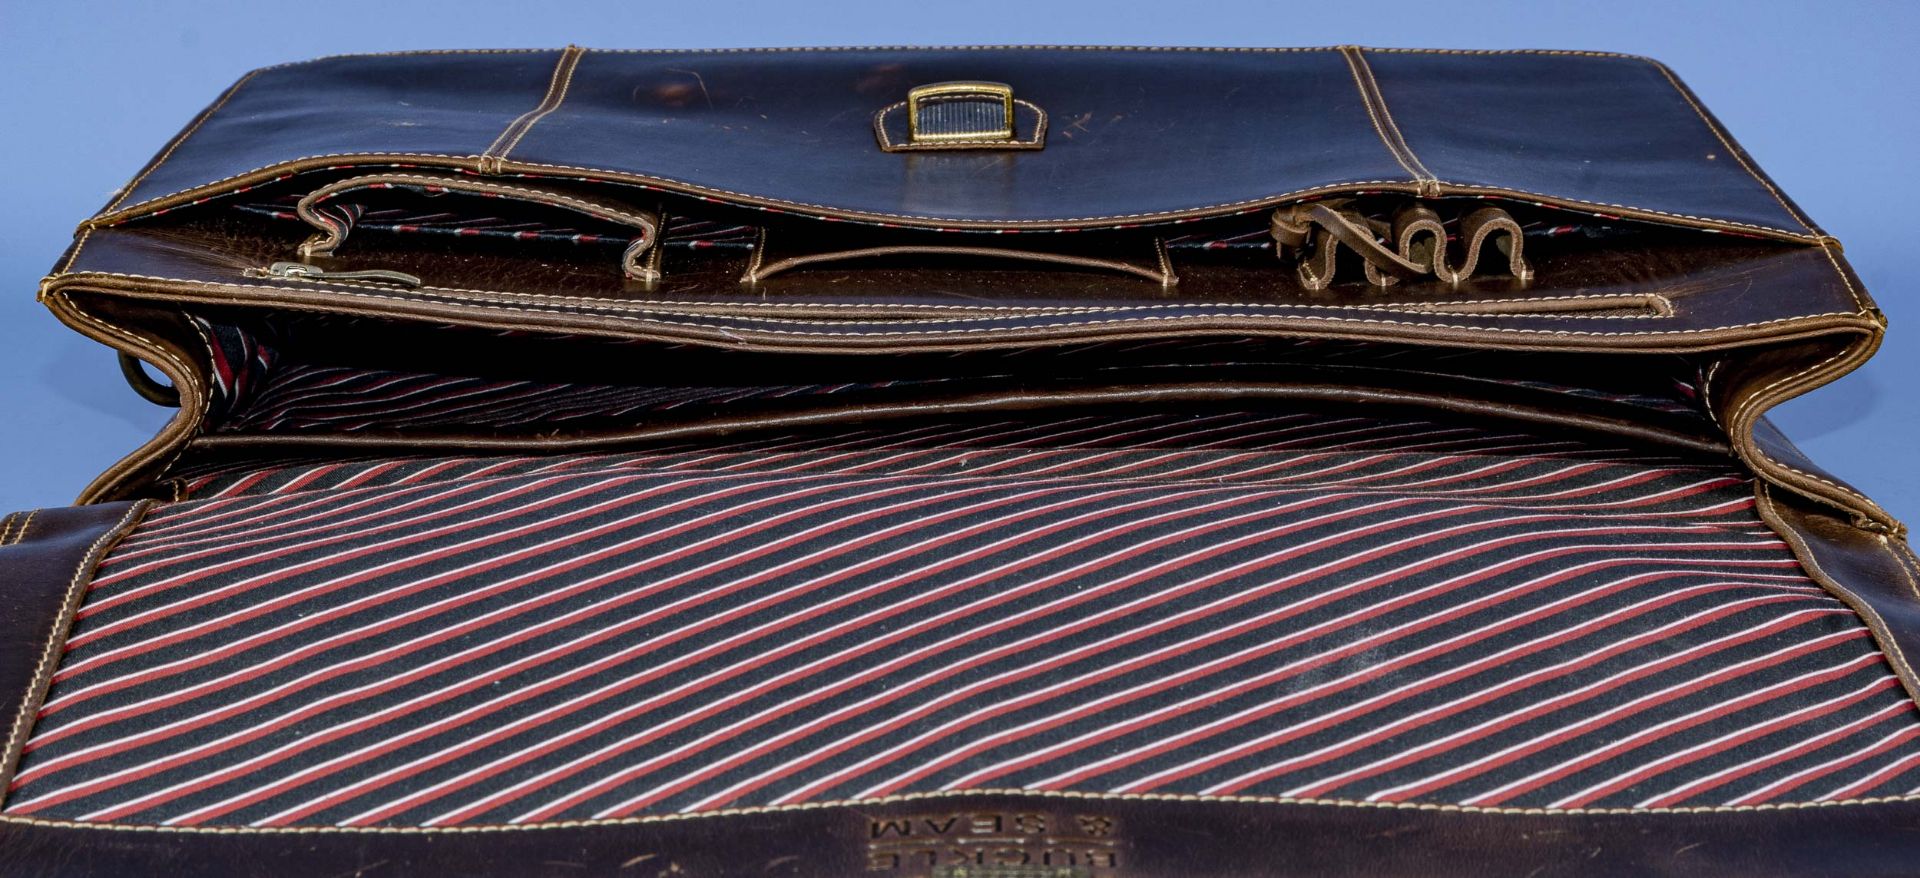 "BUCKLE & SEAM" Aktentasche in klassischer Formgebung, braunes Leder, innen mit farbig gestreiftem  - Bild 8 aus 11